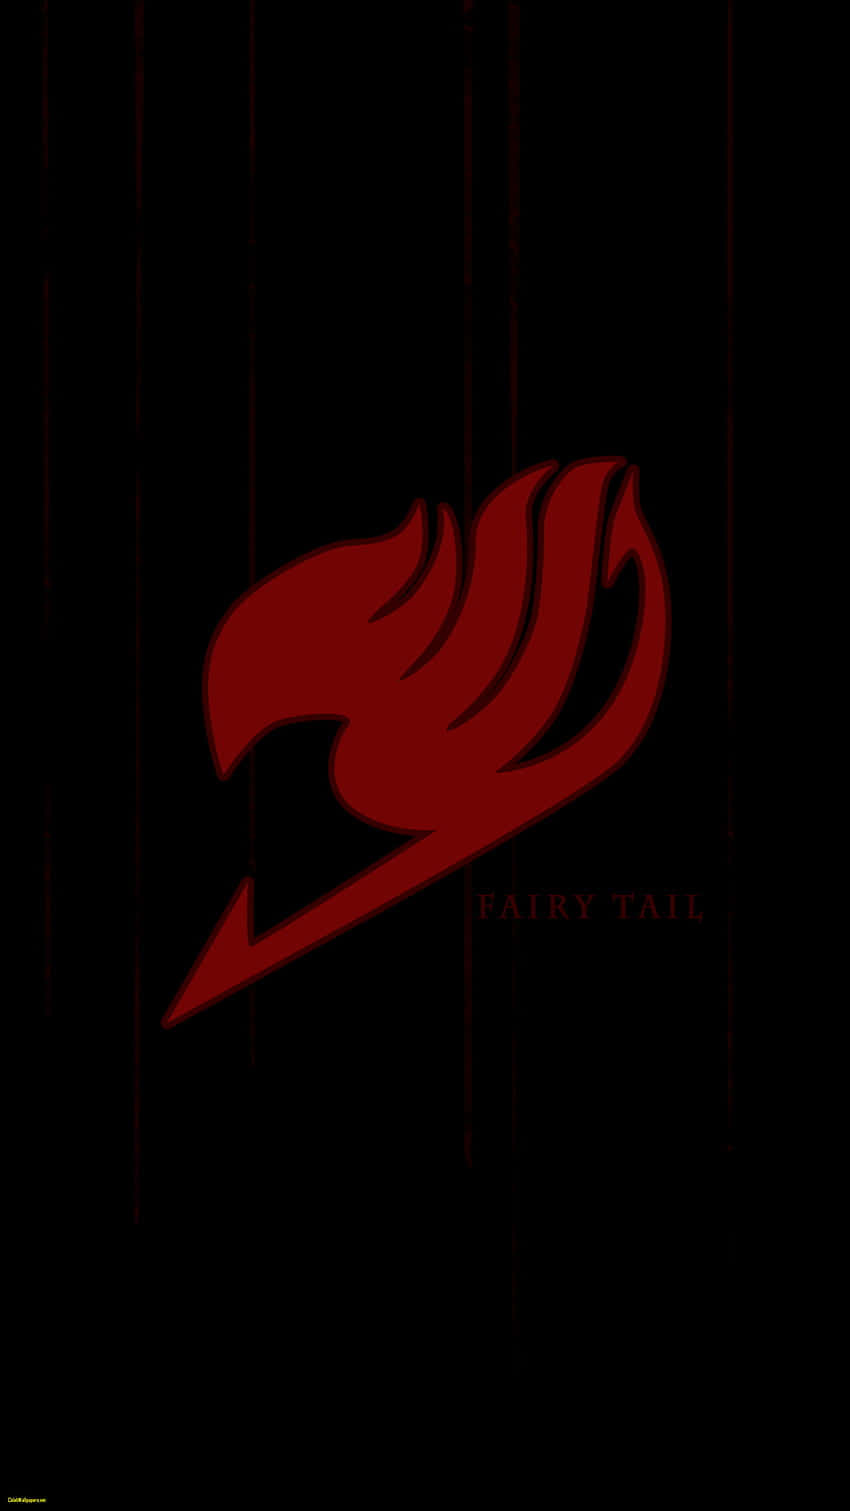 Det dynamiske logo for Fairy Tail, indstillet midt i stjerner og ild. Wallpaper